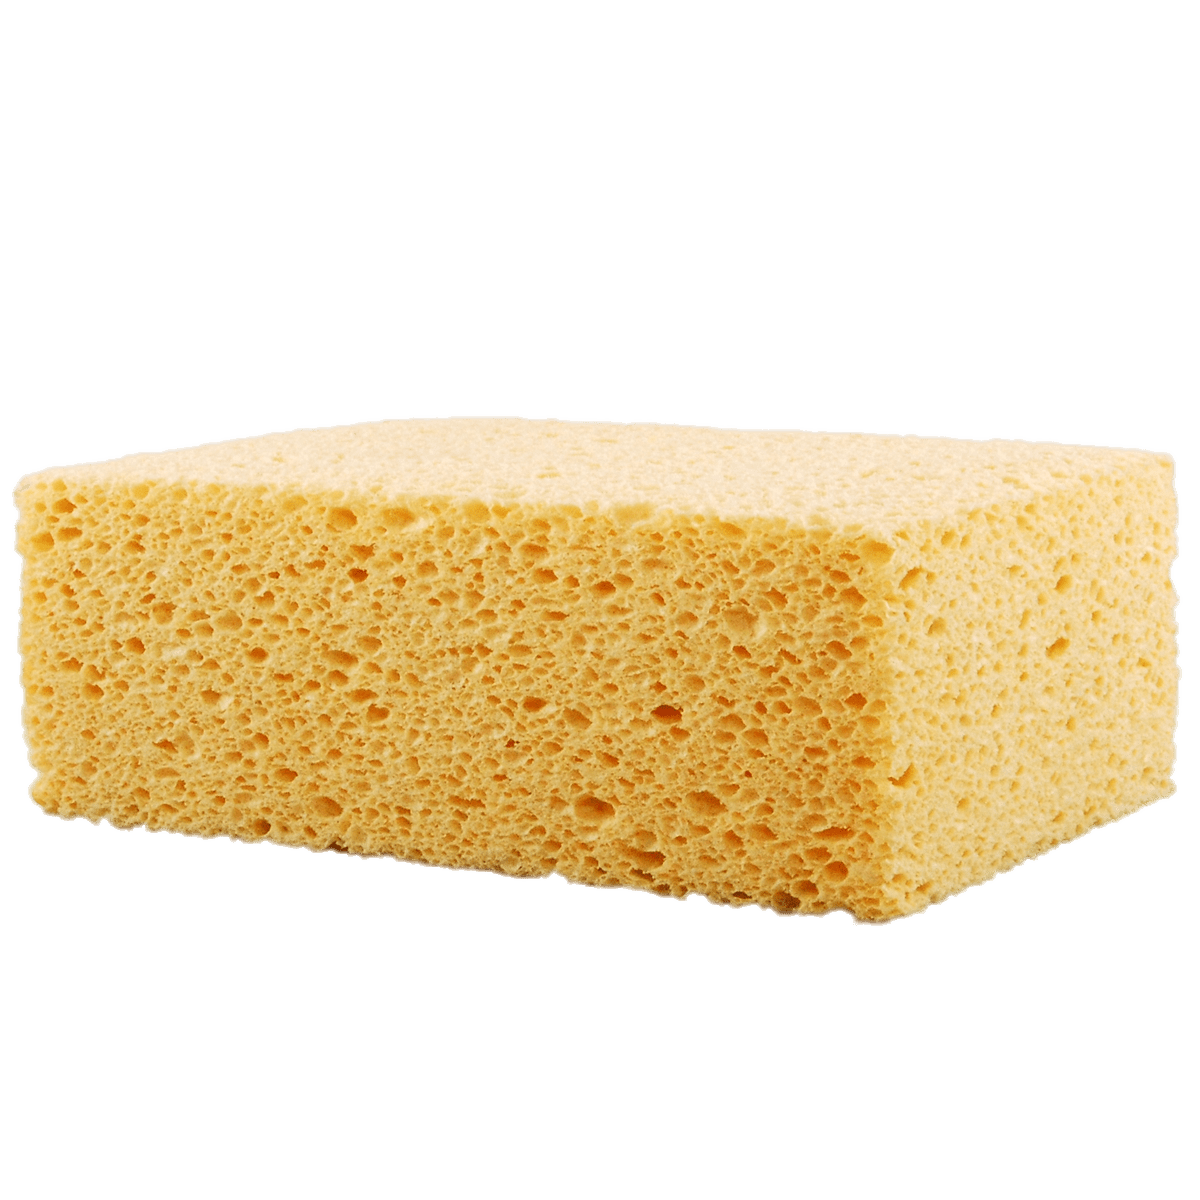 soap clipart soap sponge